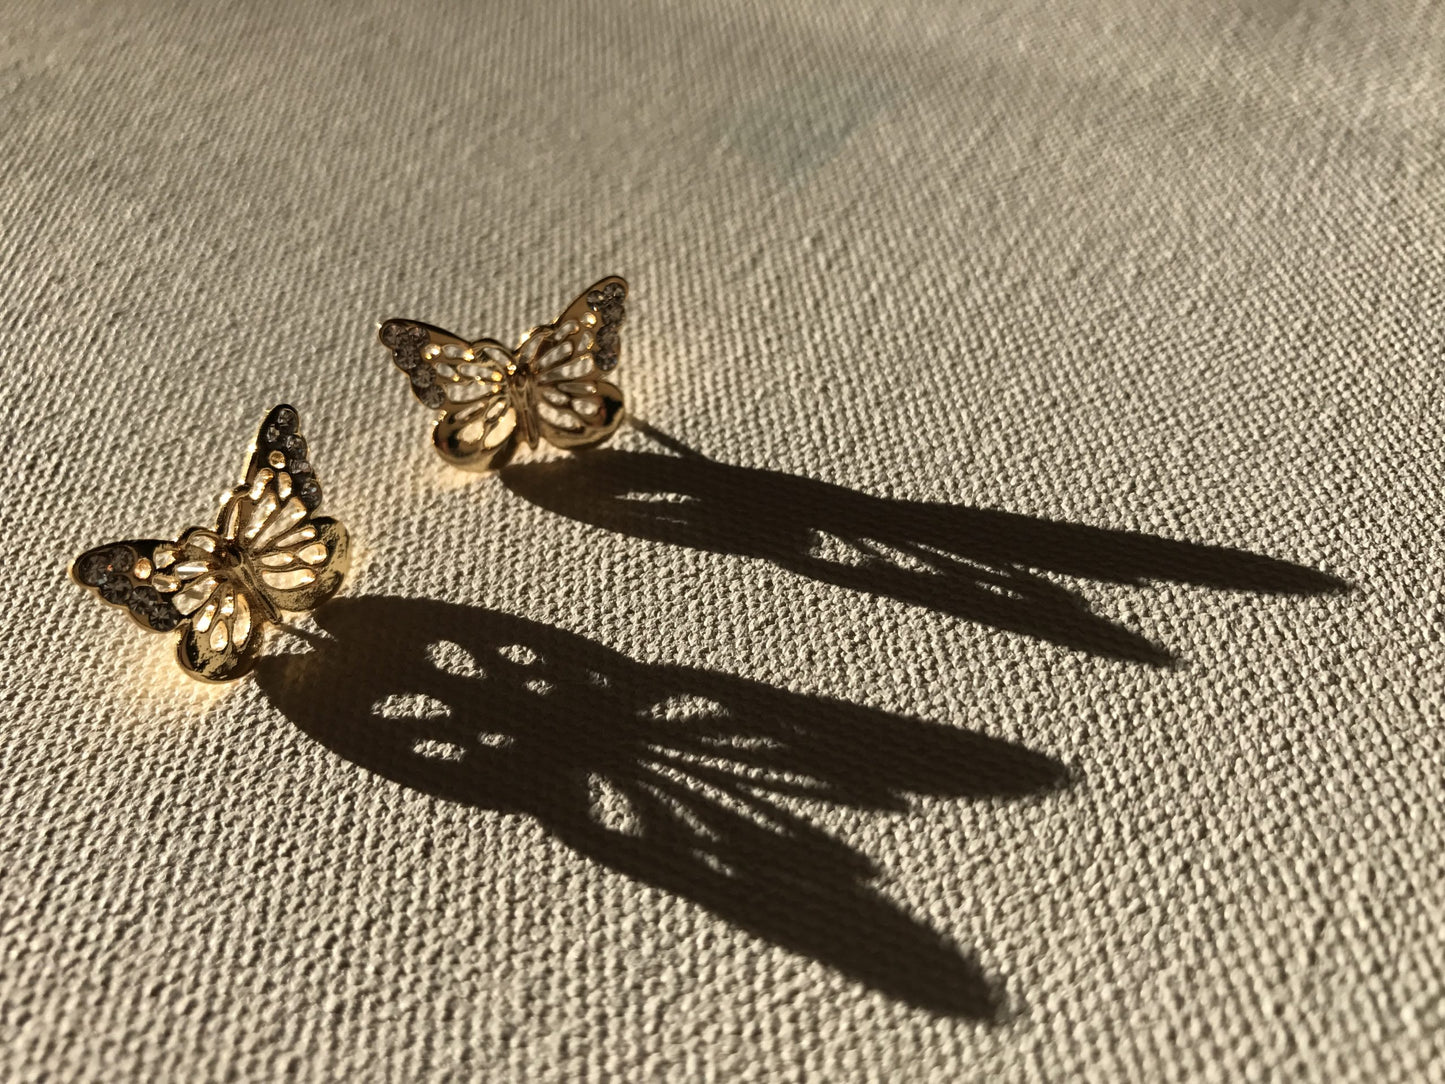 gold-tone butterfly earrings